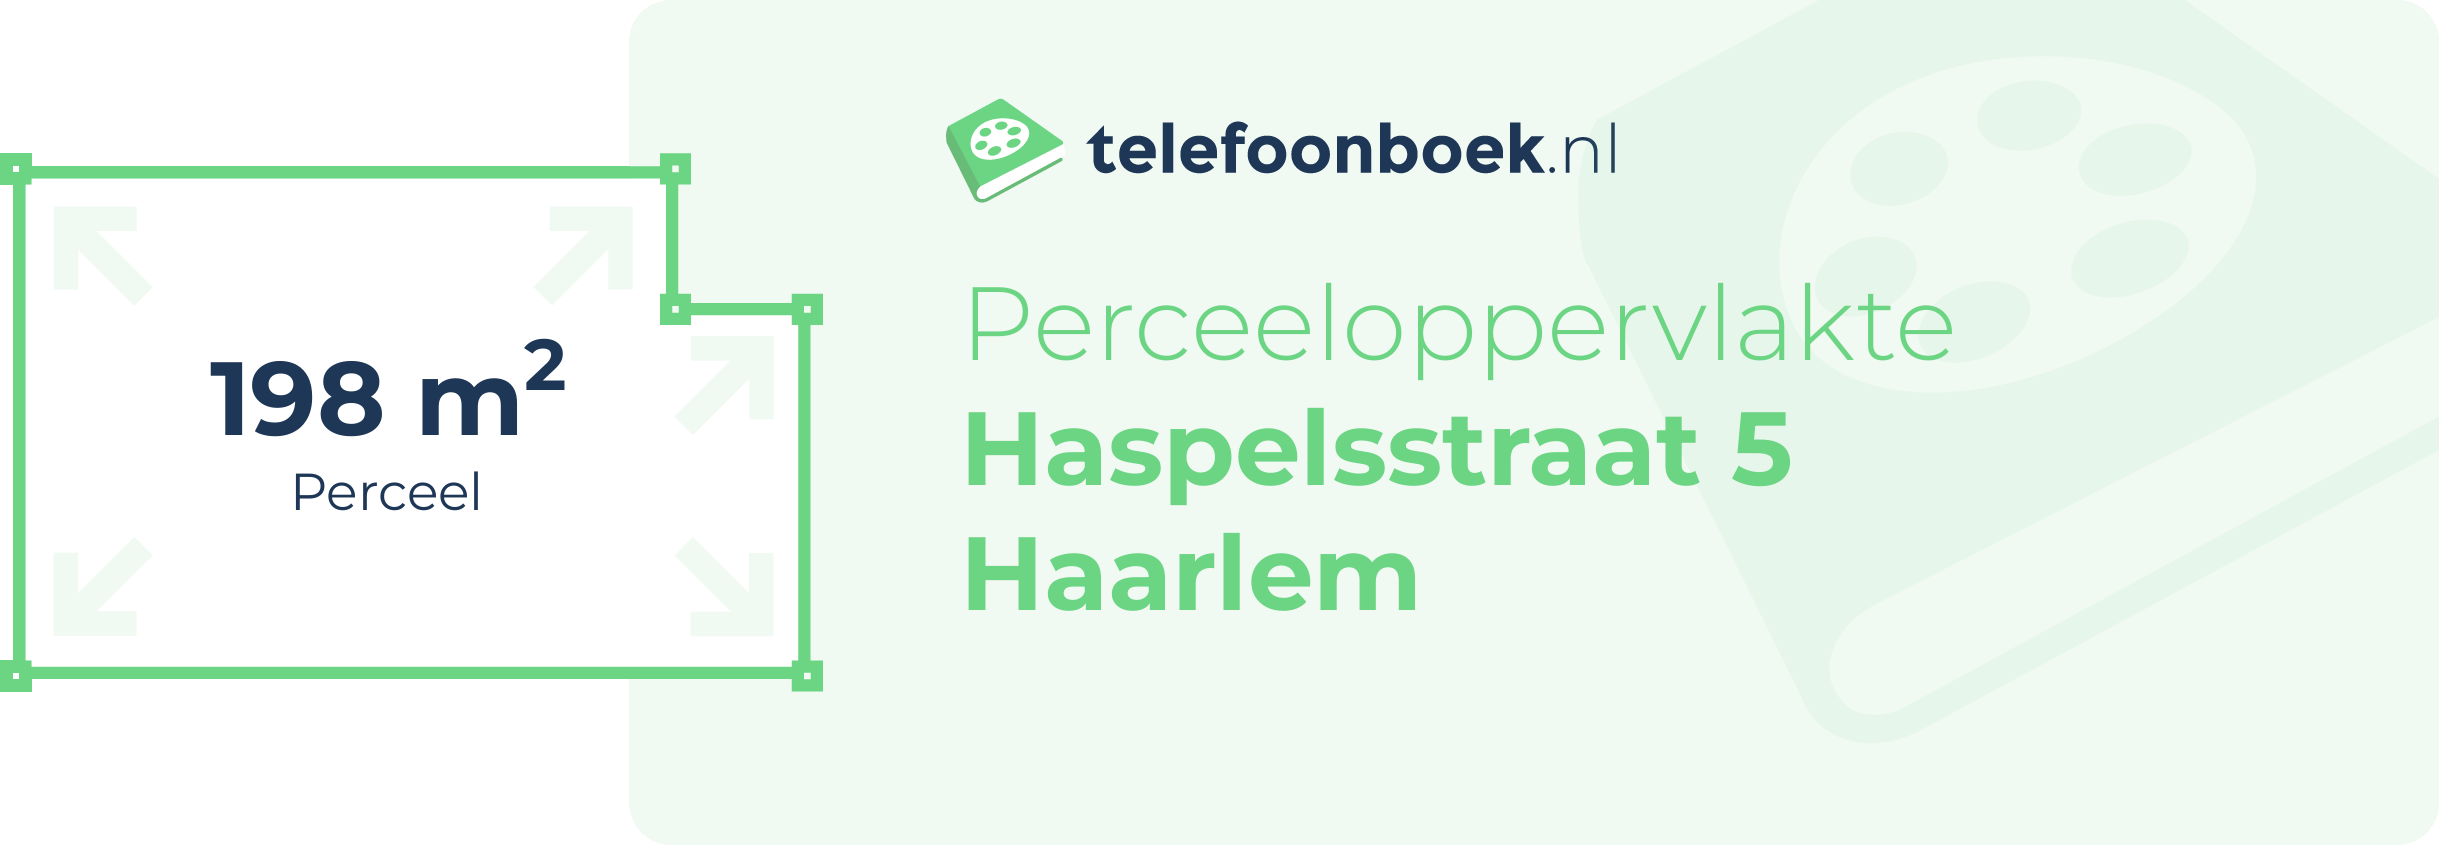 Perceeloppervlakte Haspelsstraat 5 Haarlem